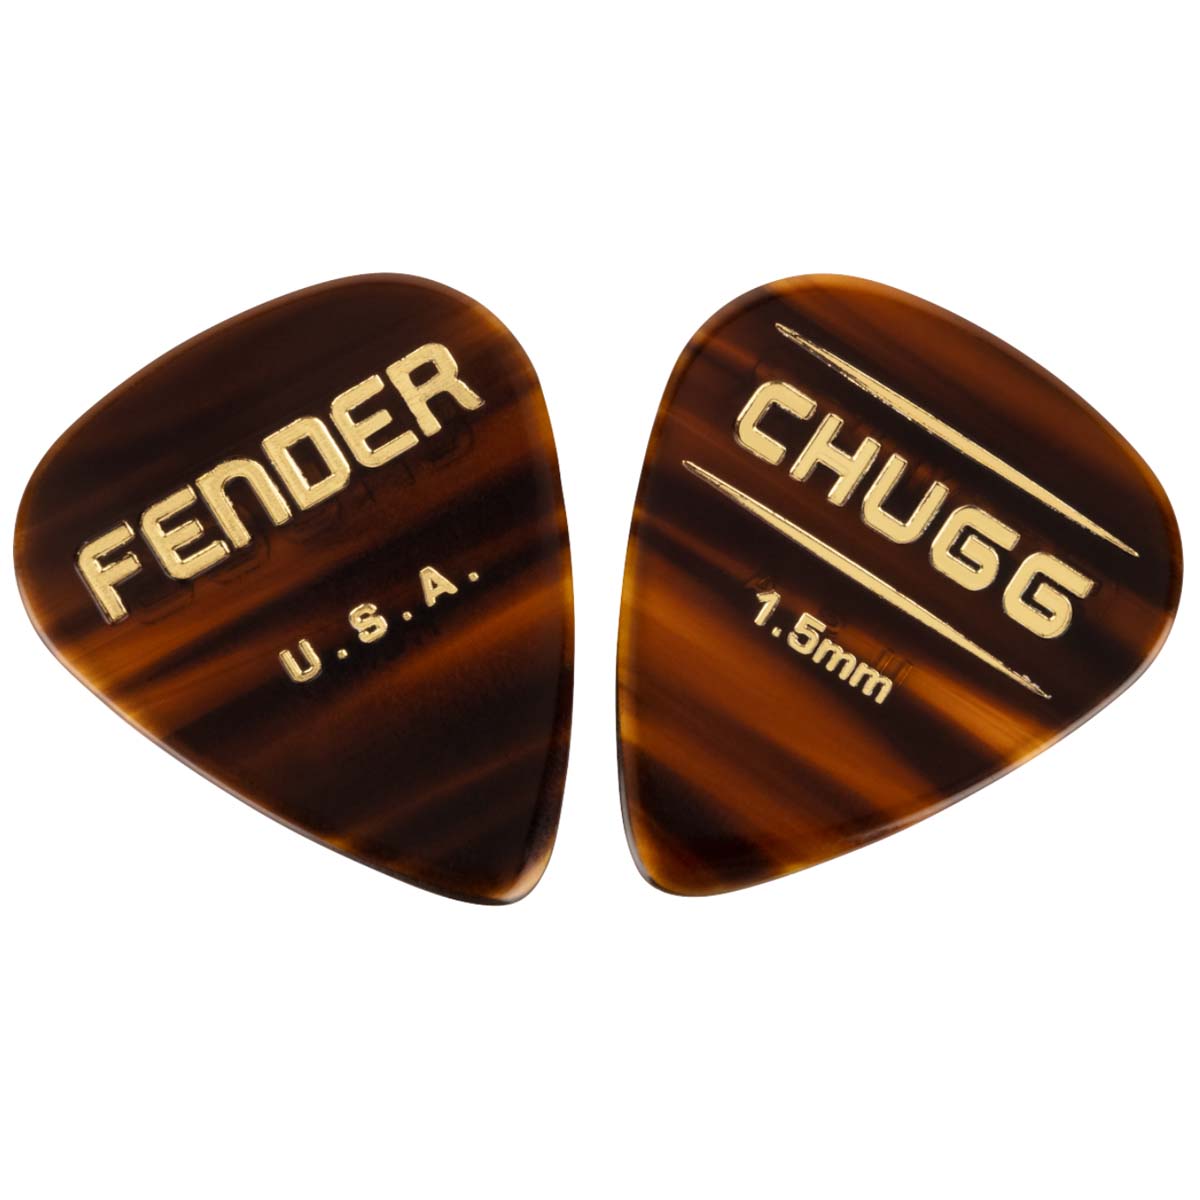 Fender Chugg 351 Guitar Picks 6-Pack Made in USA - 1989999102